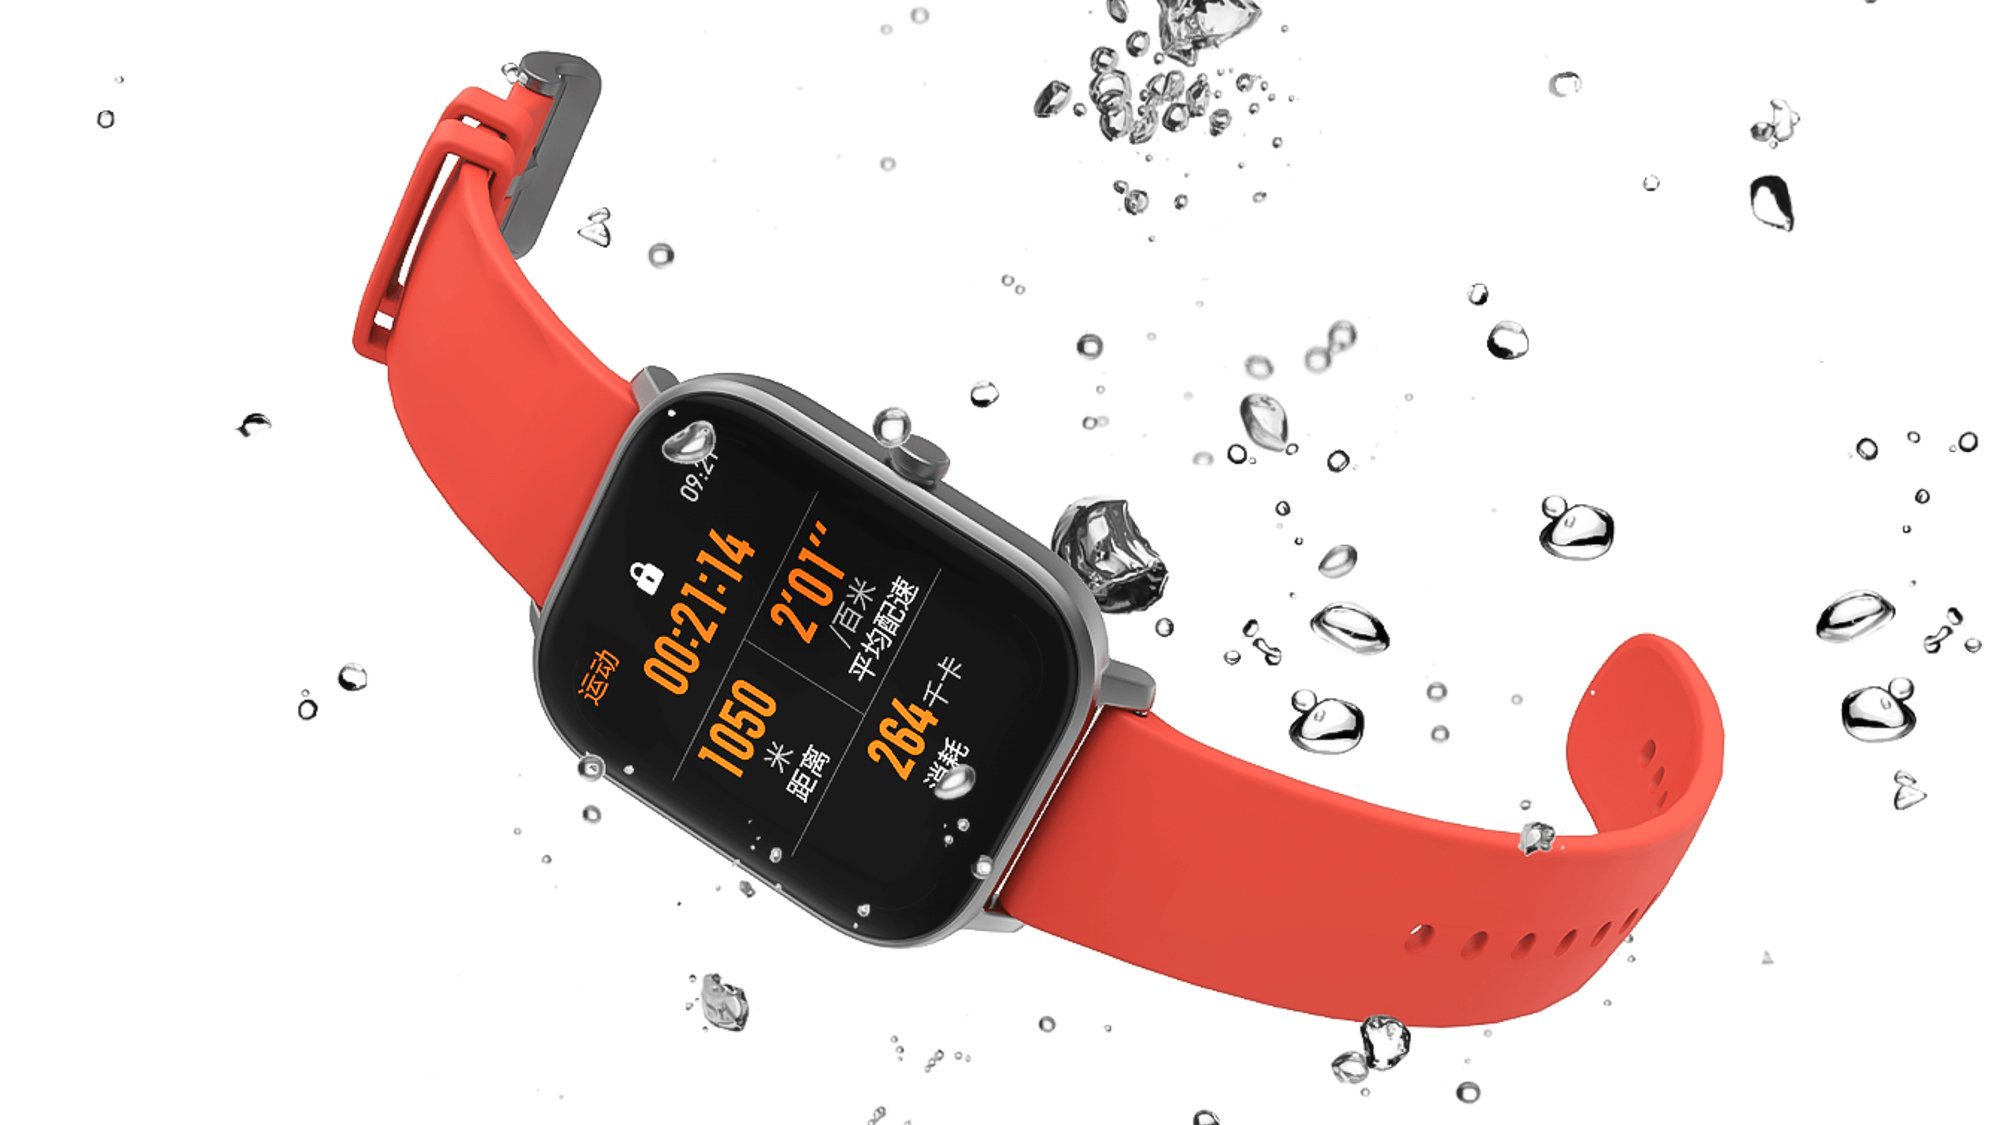 Die Smartwatch ist nach 5 ATM wasserdicht und kann somit auch mit ins Wasser genommen werden.